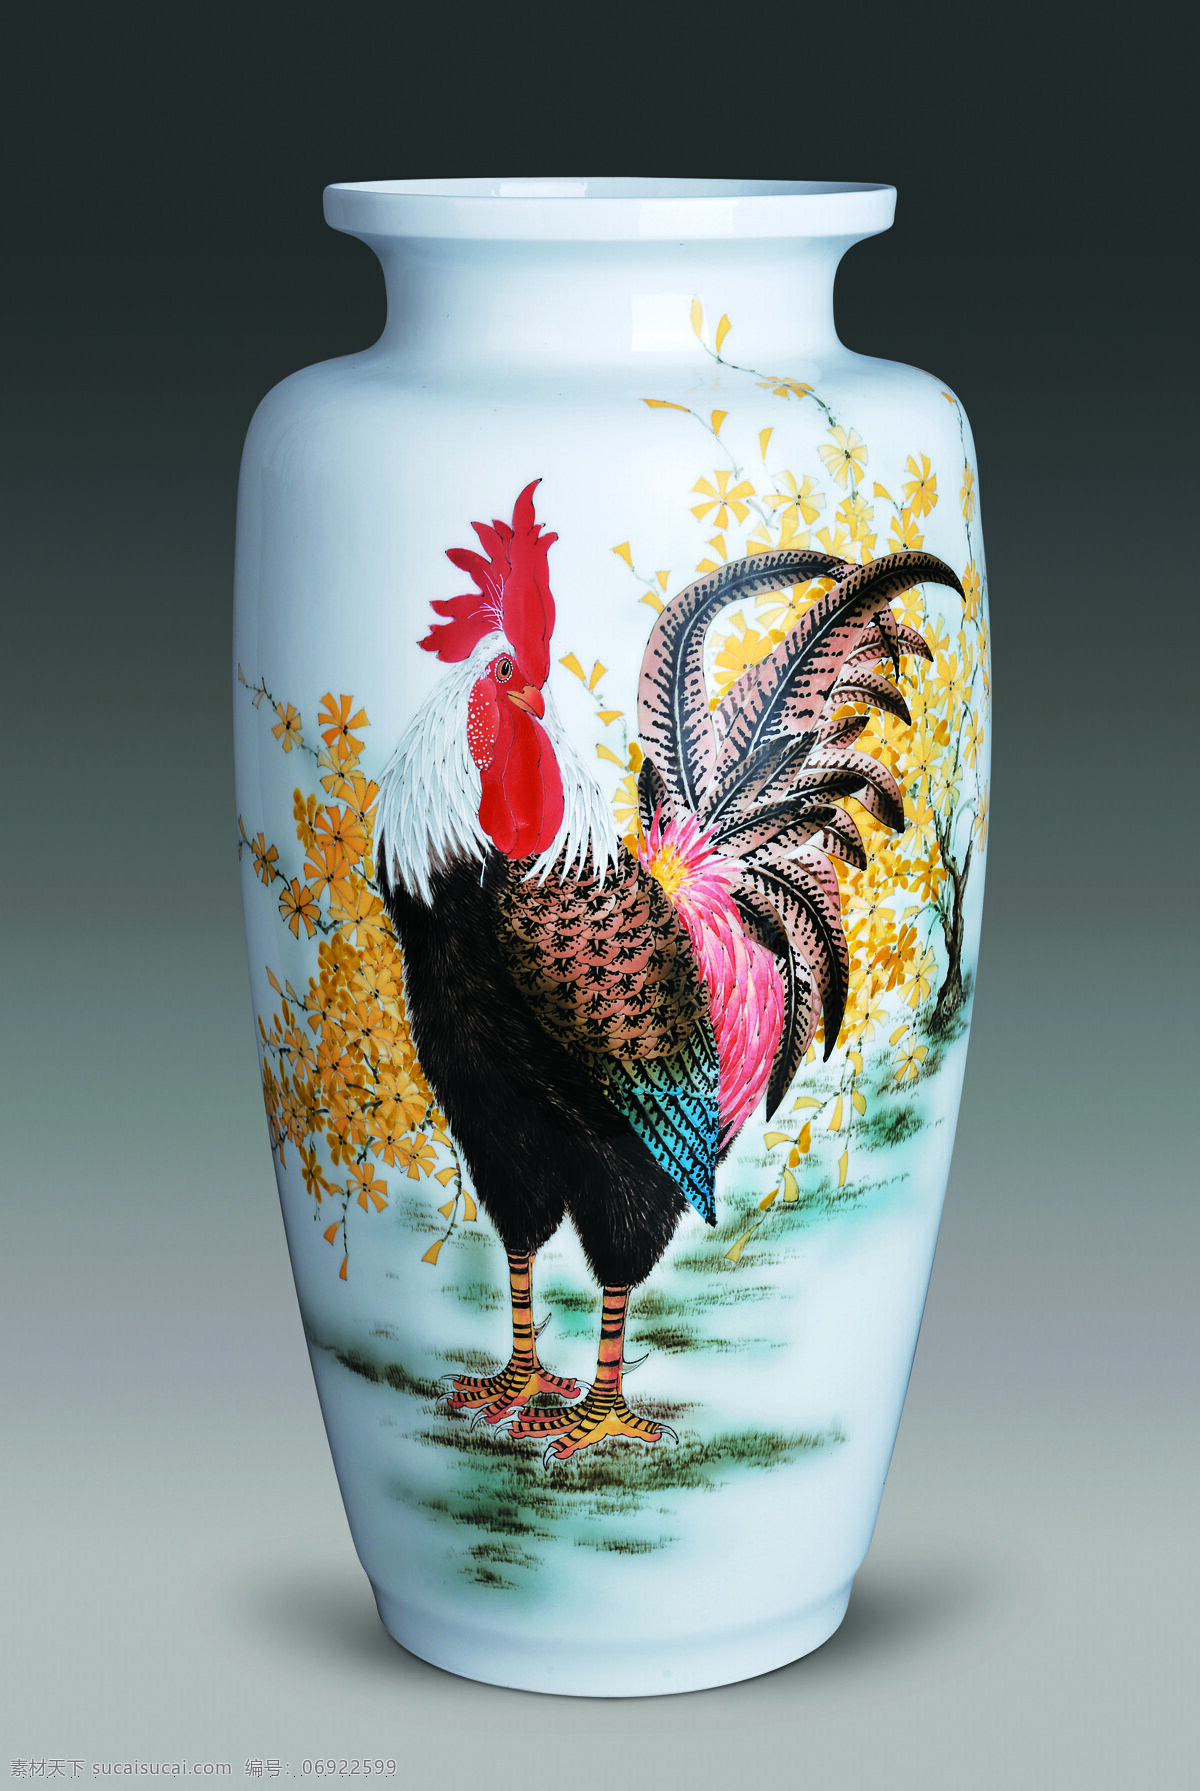 陶瓷 山水 鸡 花瓶 醴陵 瓷器 公鸡 画 彩绘 美术绘画 文化艺术